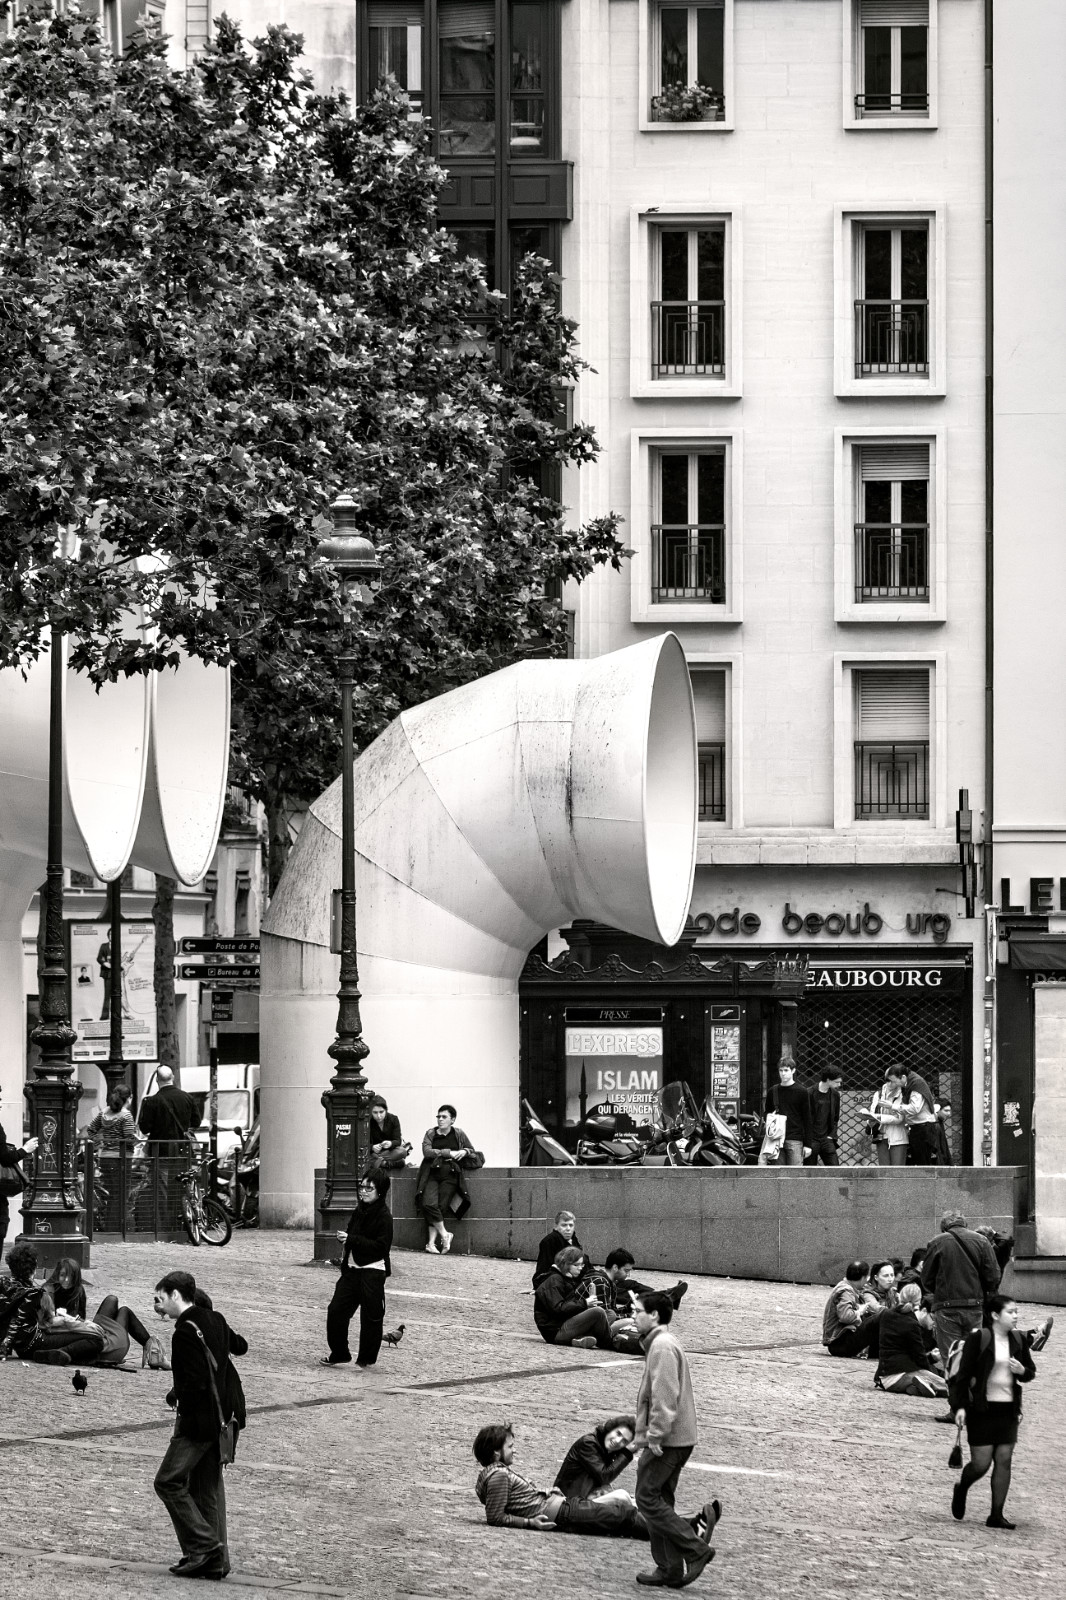 Pompidou központ Párizsban